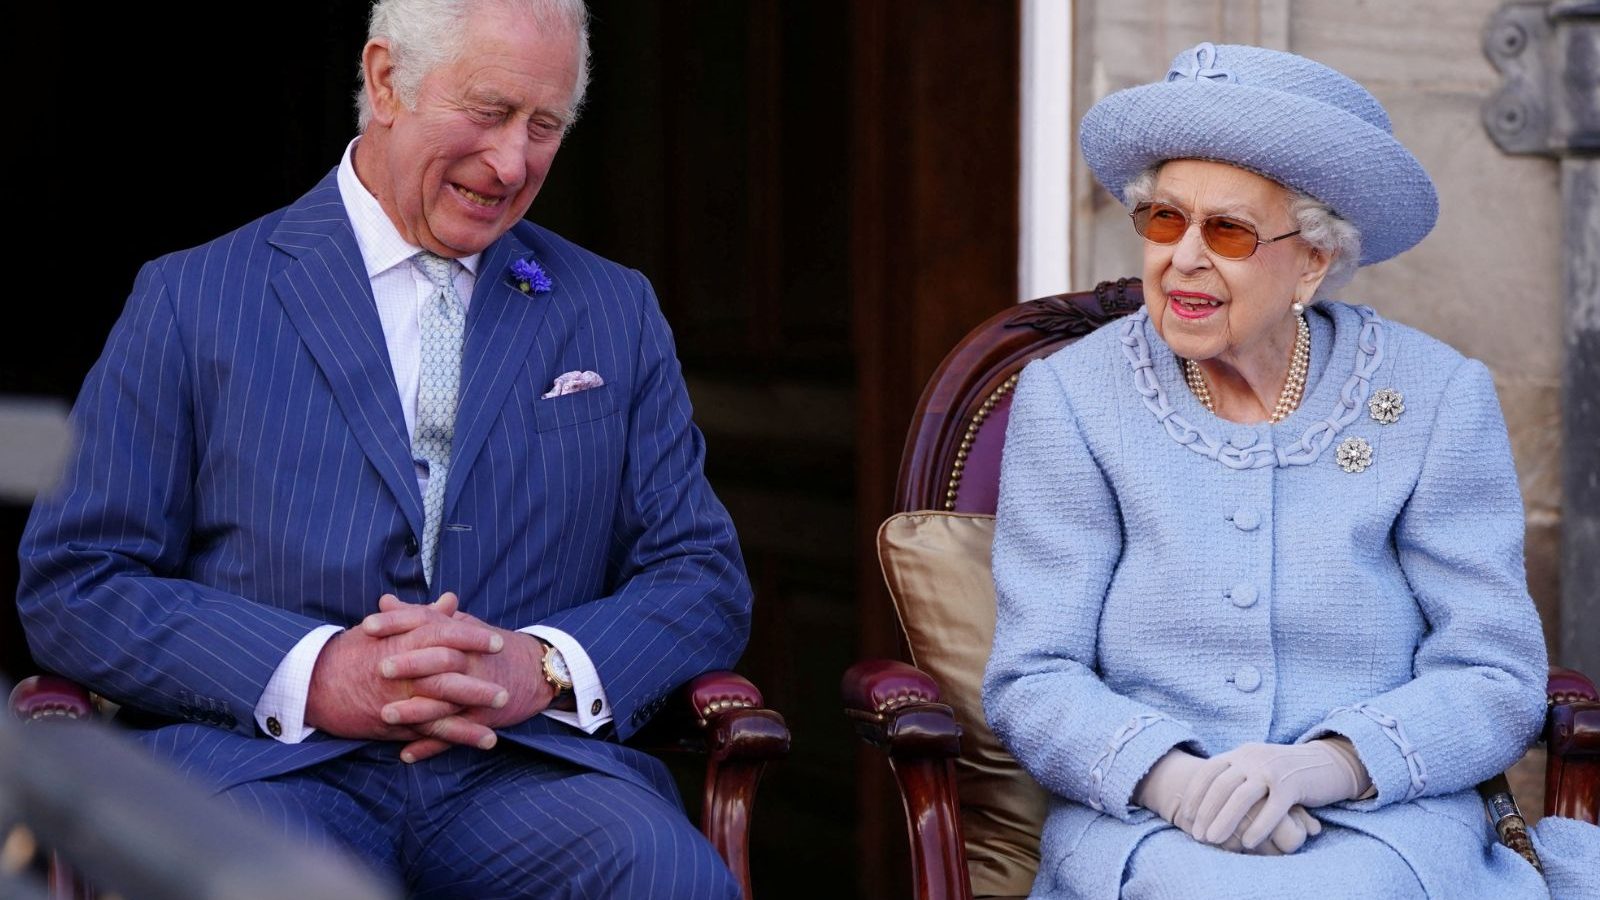 महारानी एलिजाबेथ-II का निधन: किंग चार्ल्स III अब होंगे नए सम्राट, विलियम-केट होंगे प्रिंस एंड प्रिंसेस ऑफ वेल्स